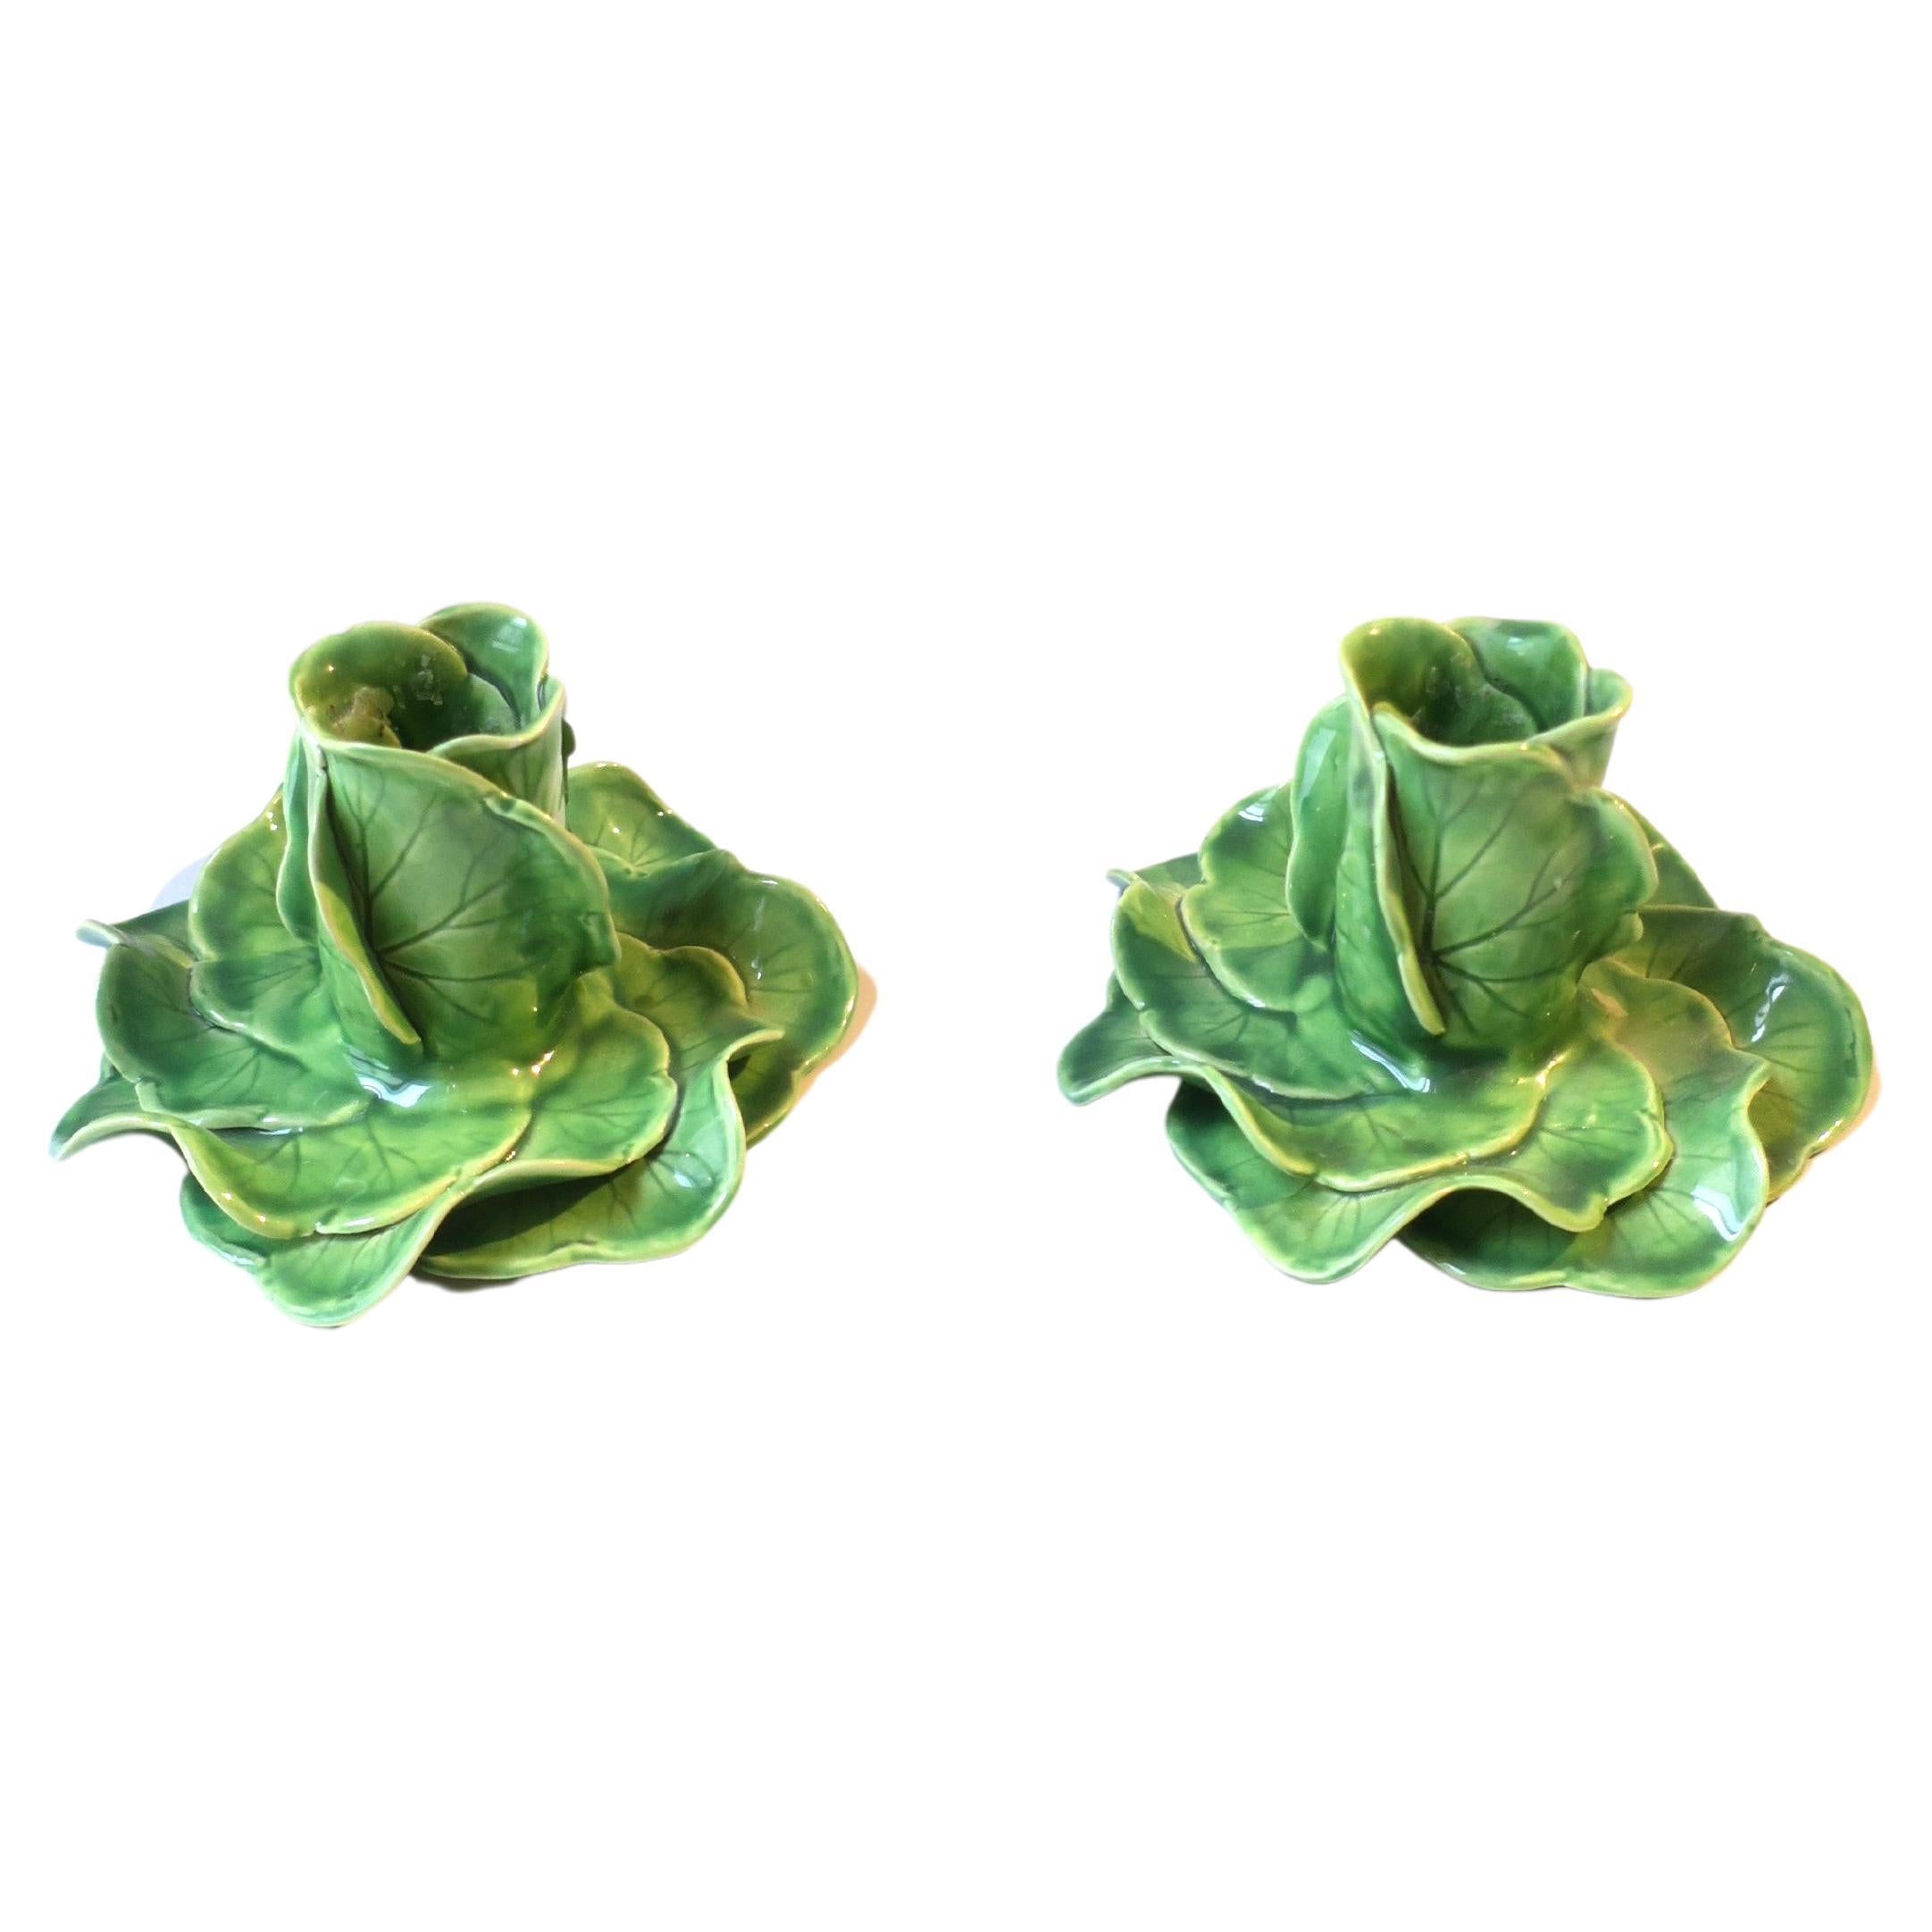 Glazed Green Porcelain Lettuce Leaf Candlestick Holders Styled After Dodie Thayer